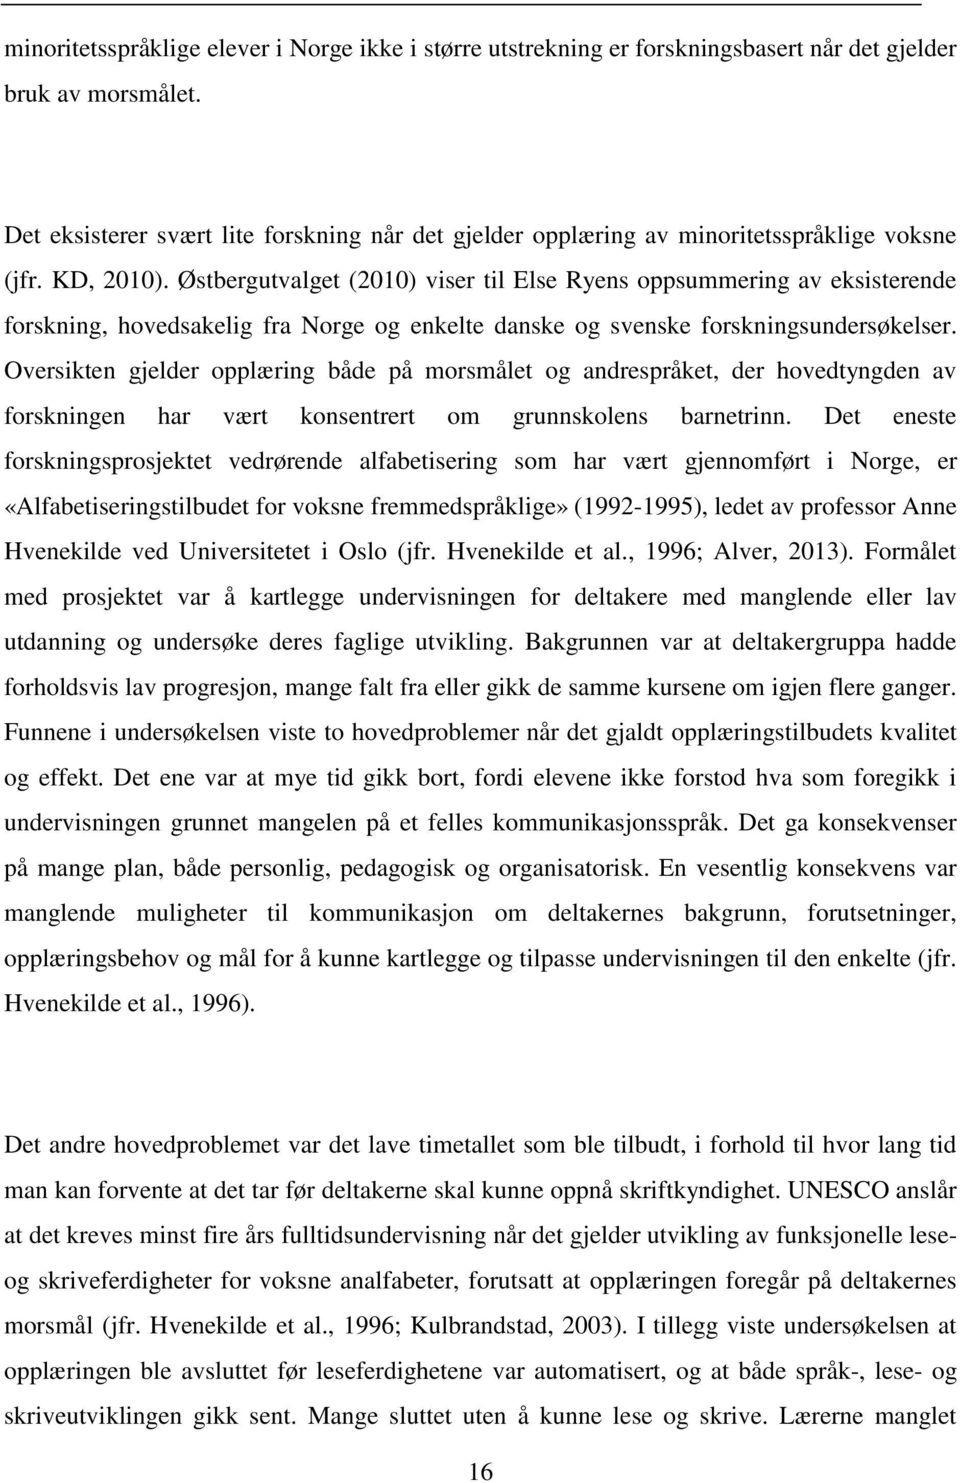 Østbergutvalget (2010) viser til Else Ryens oppsummering av eksisterende forskning, hovedsakelig fra Norge og enkelte danske og svenske forskningsundersøkelser.